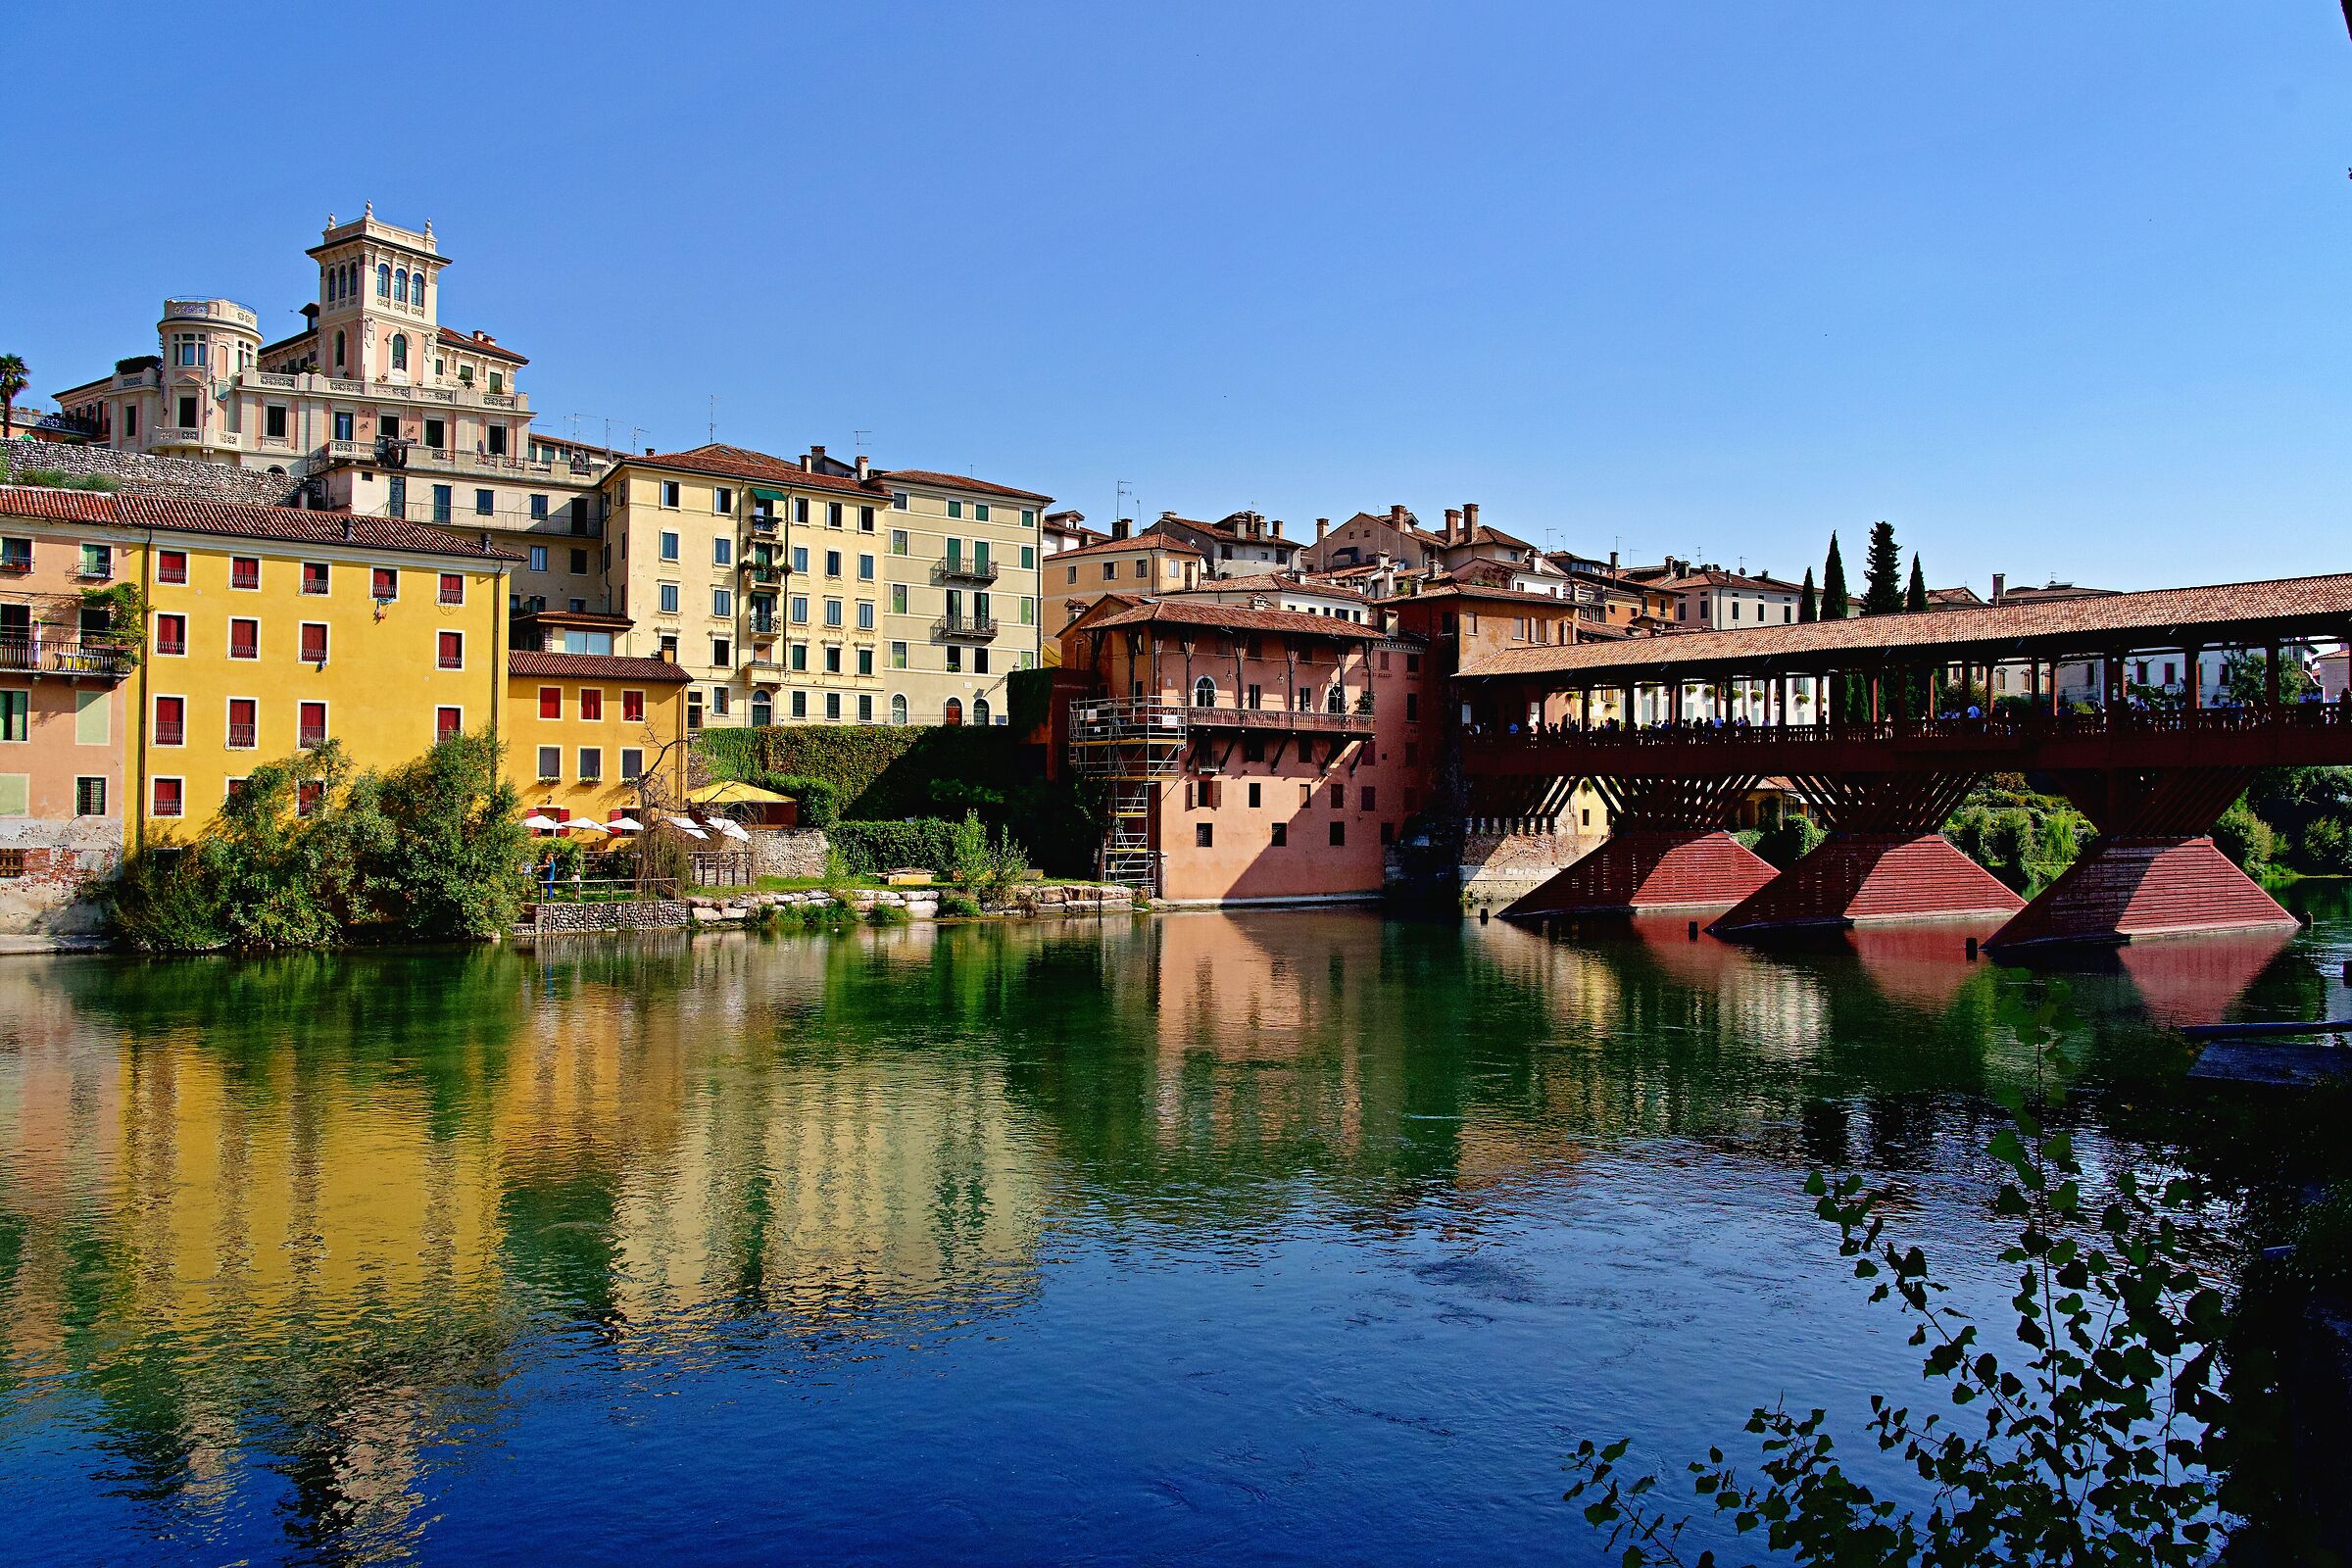 Bassano del grappa "Ponte vecchio sul Brenta"...